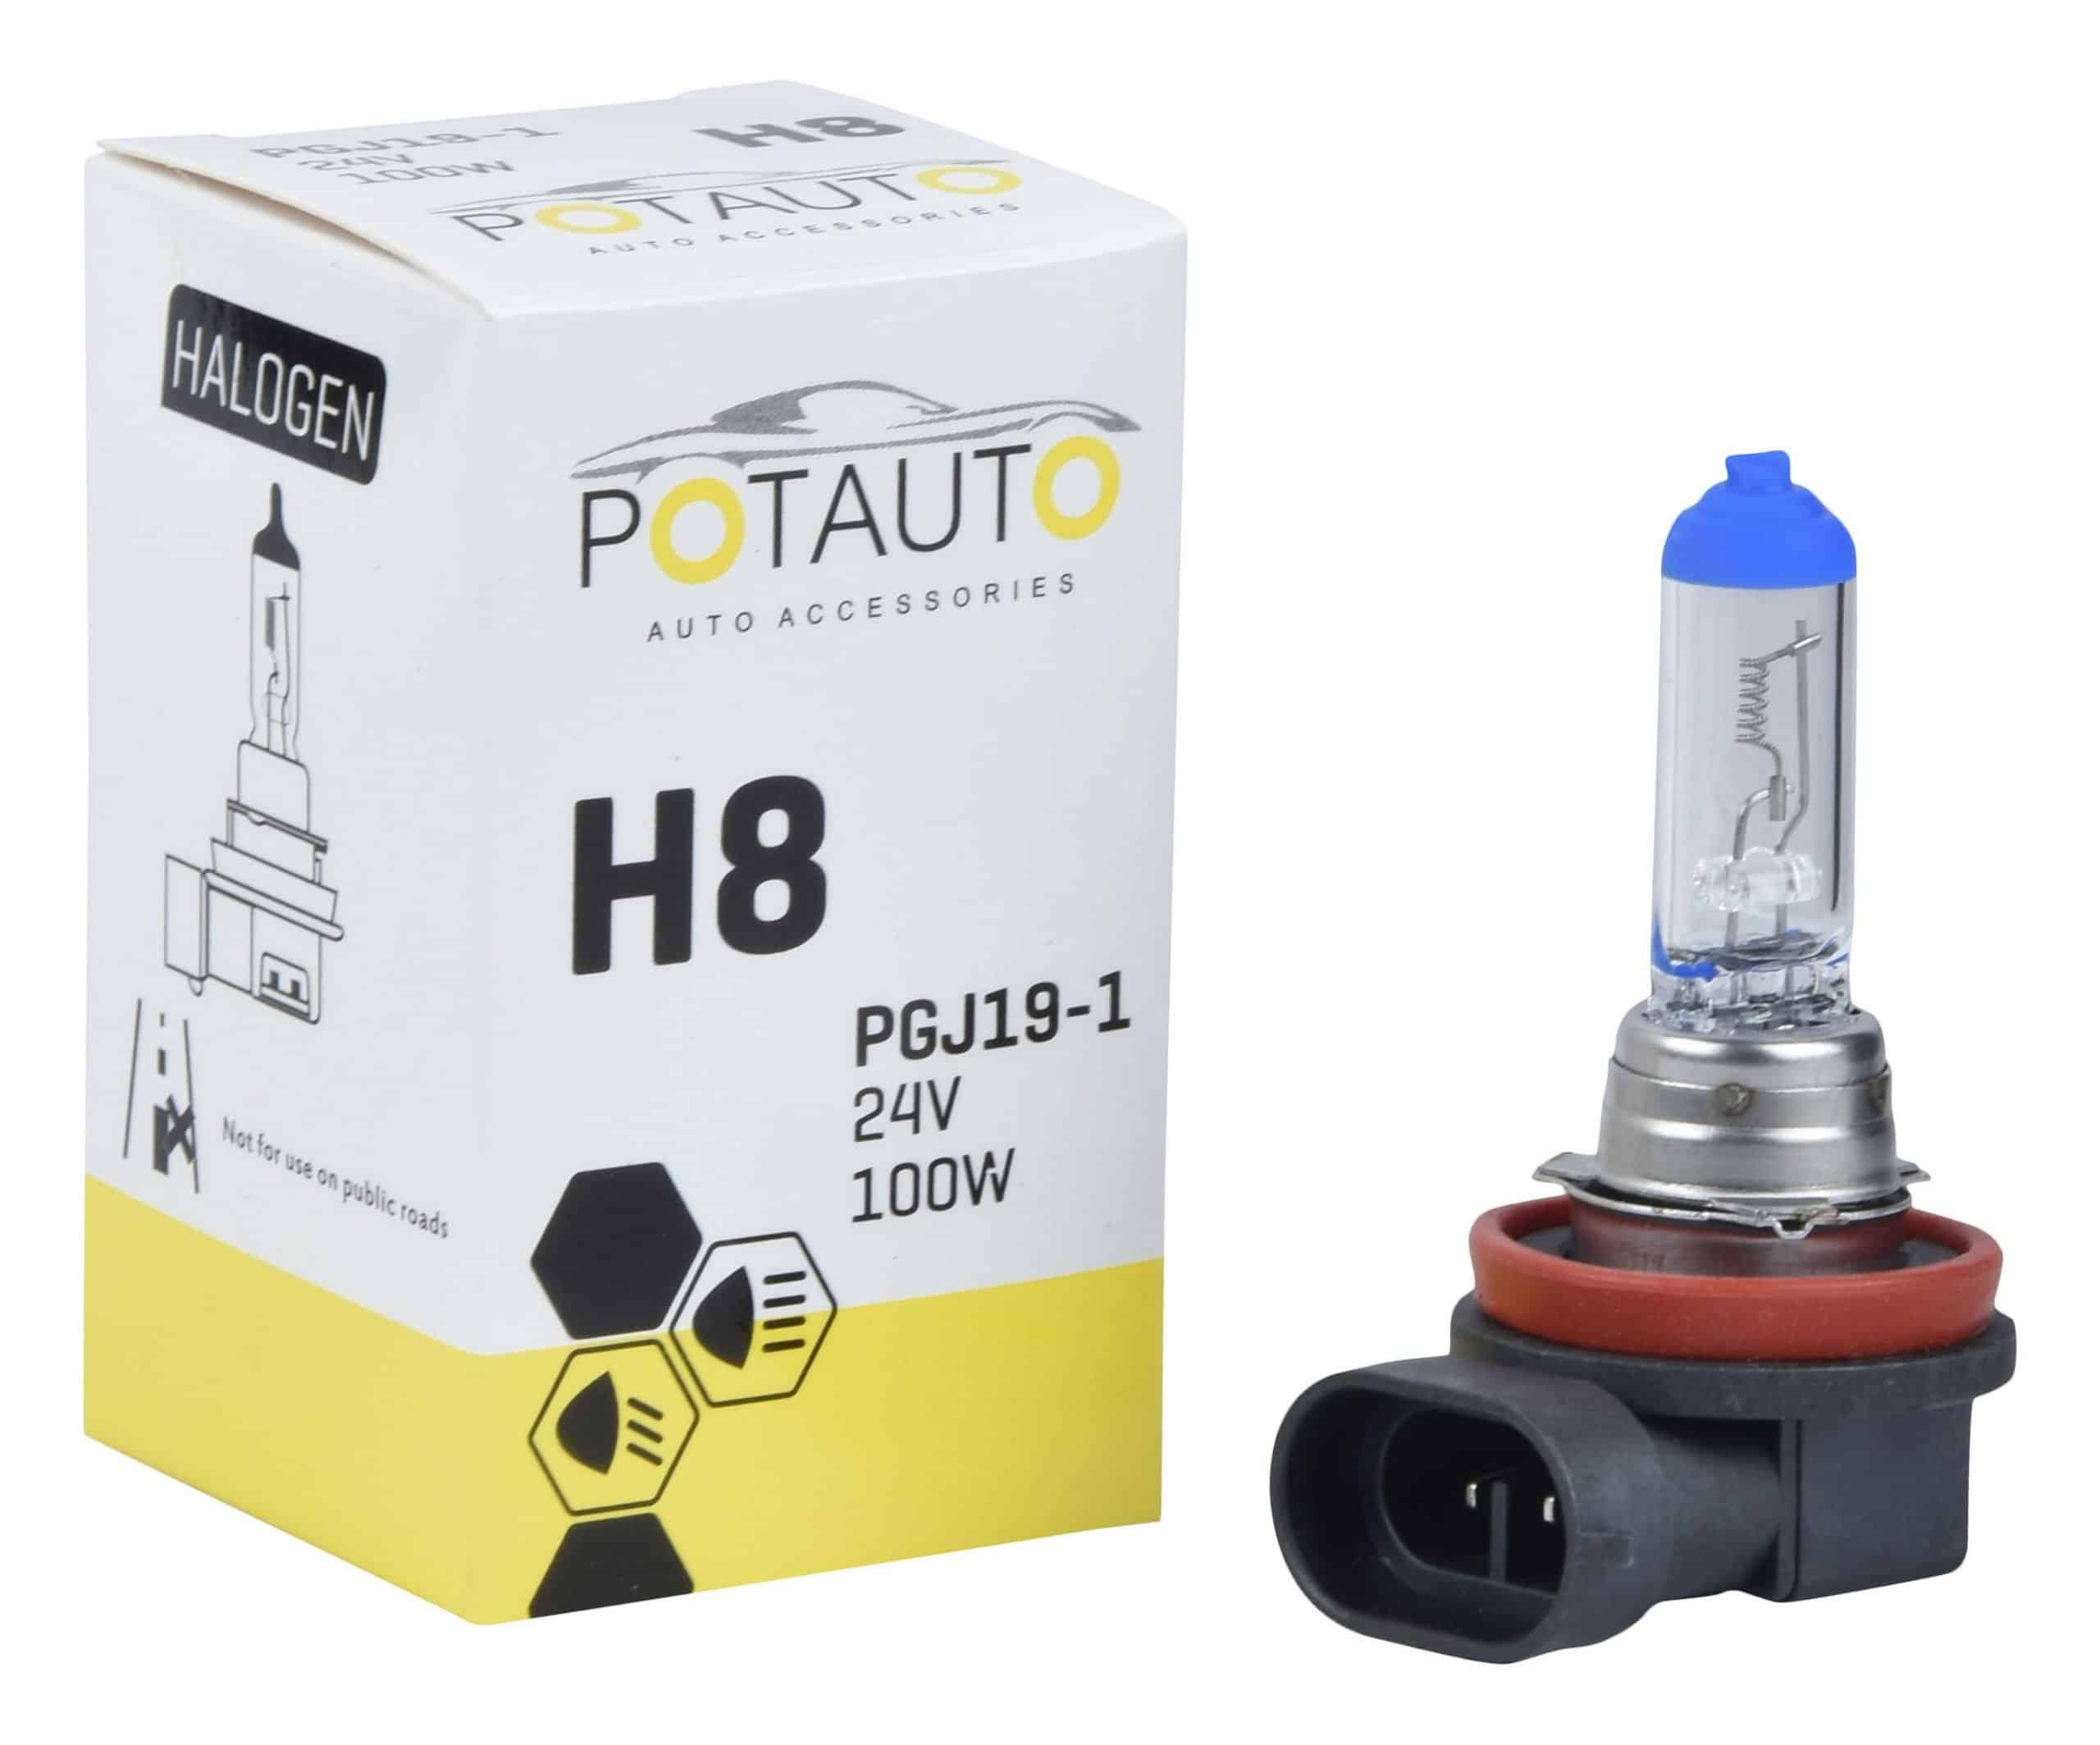 Potauto H8 Headlight Bulb PGJ19-1 24V 100W